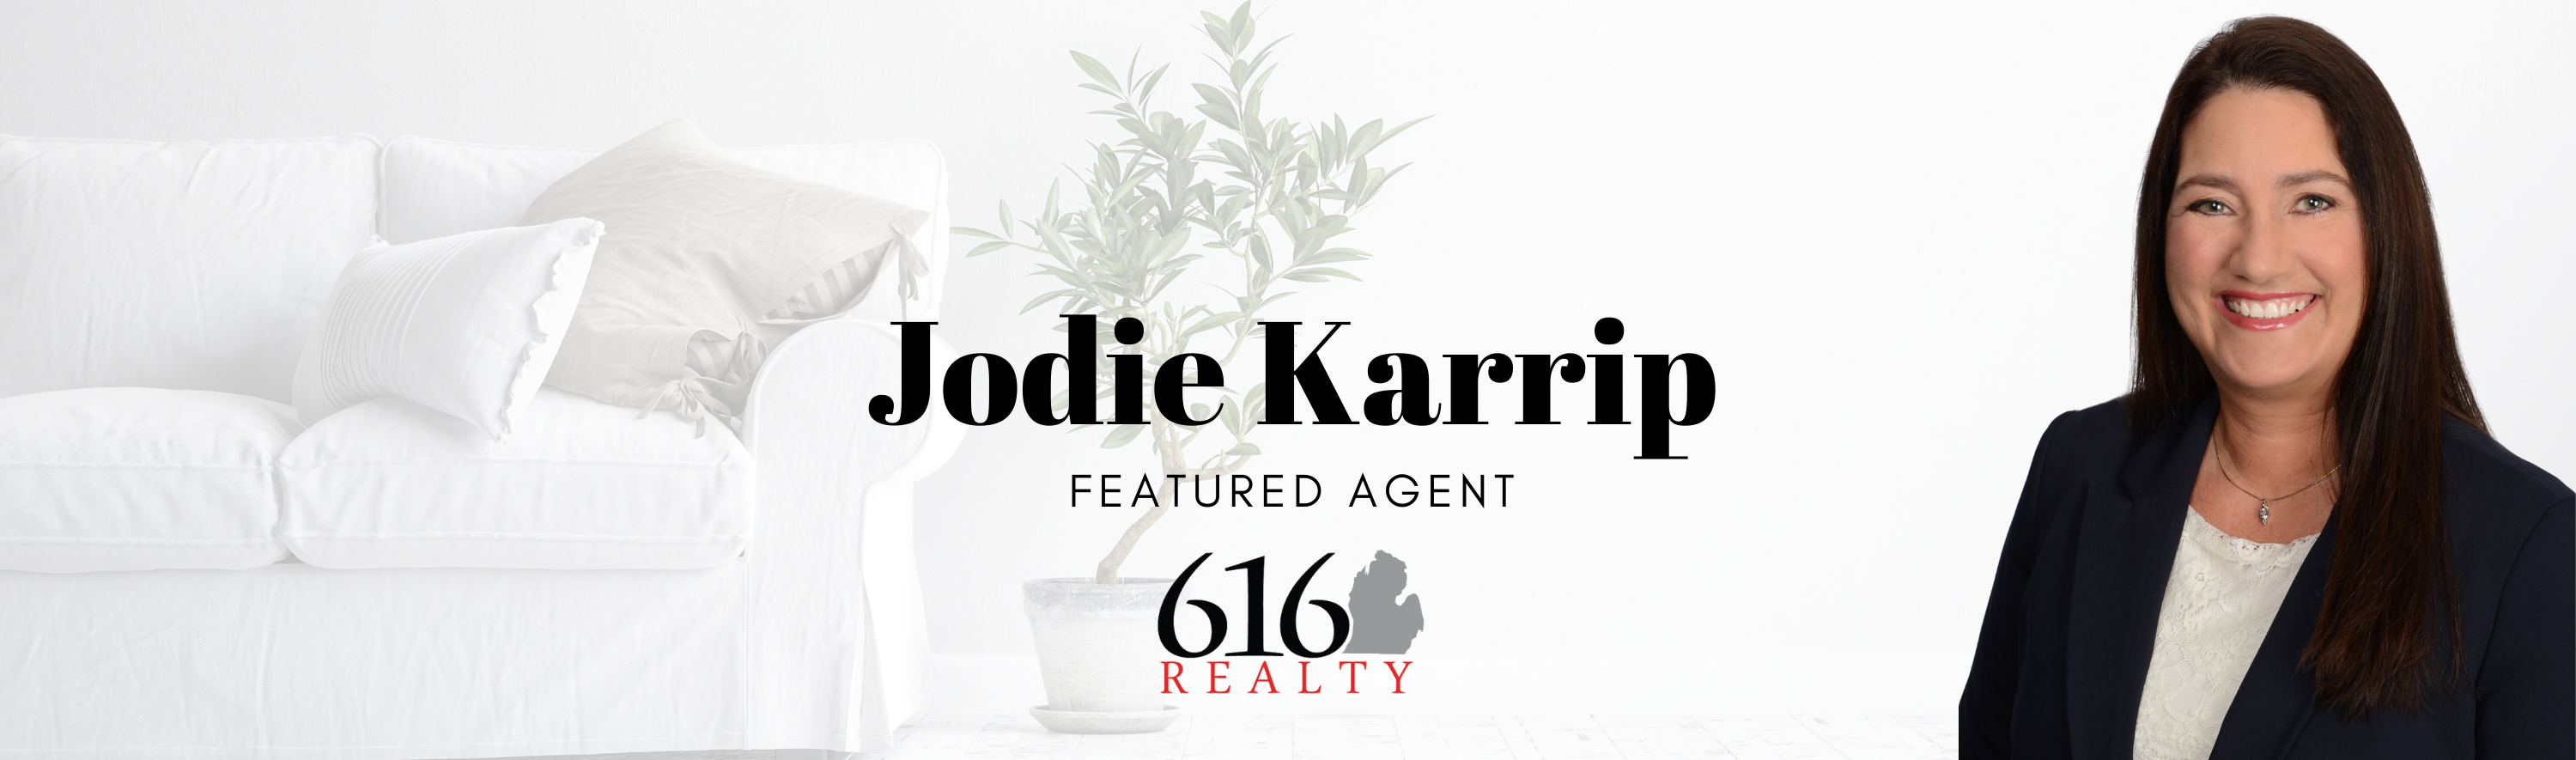 Featured Agent - Jodie Karrip